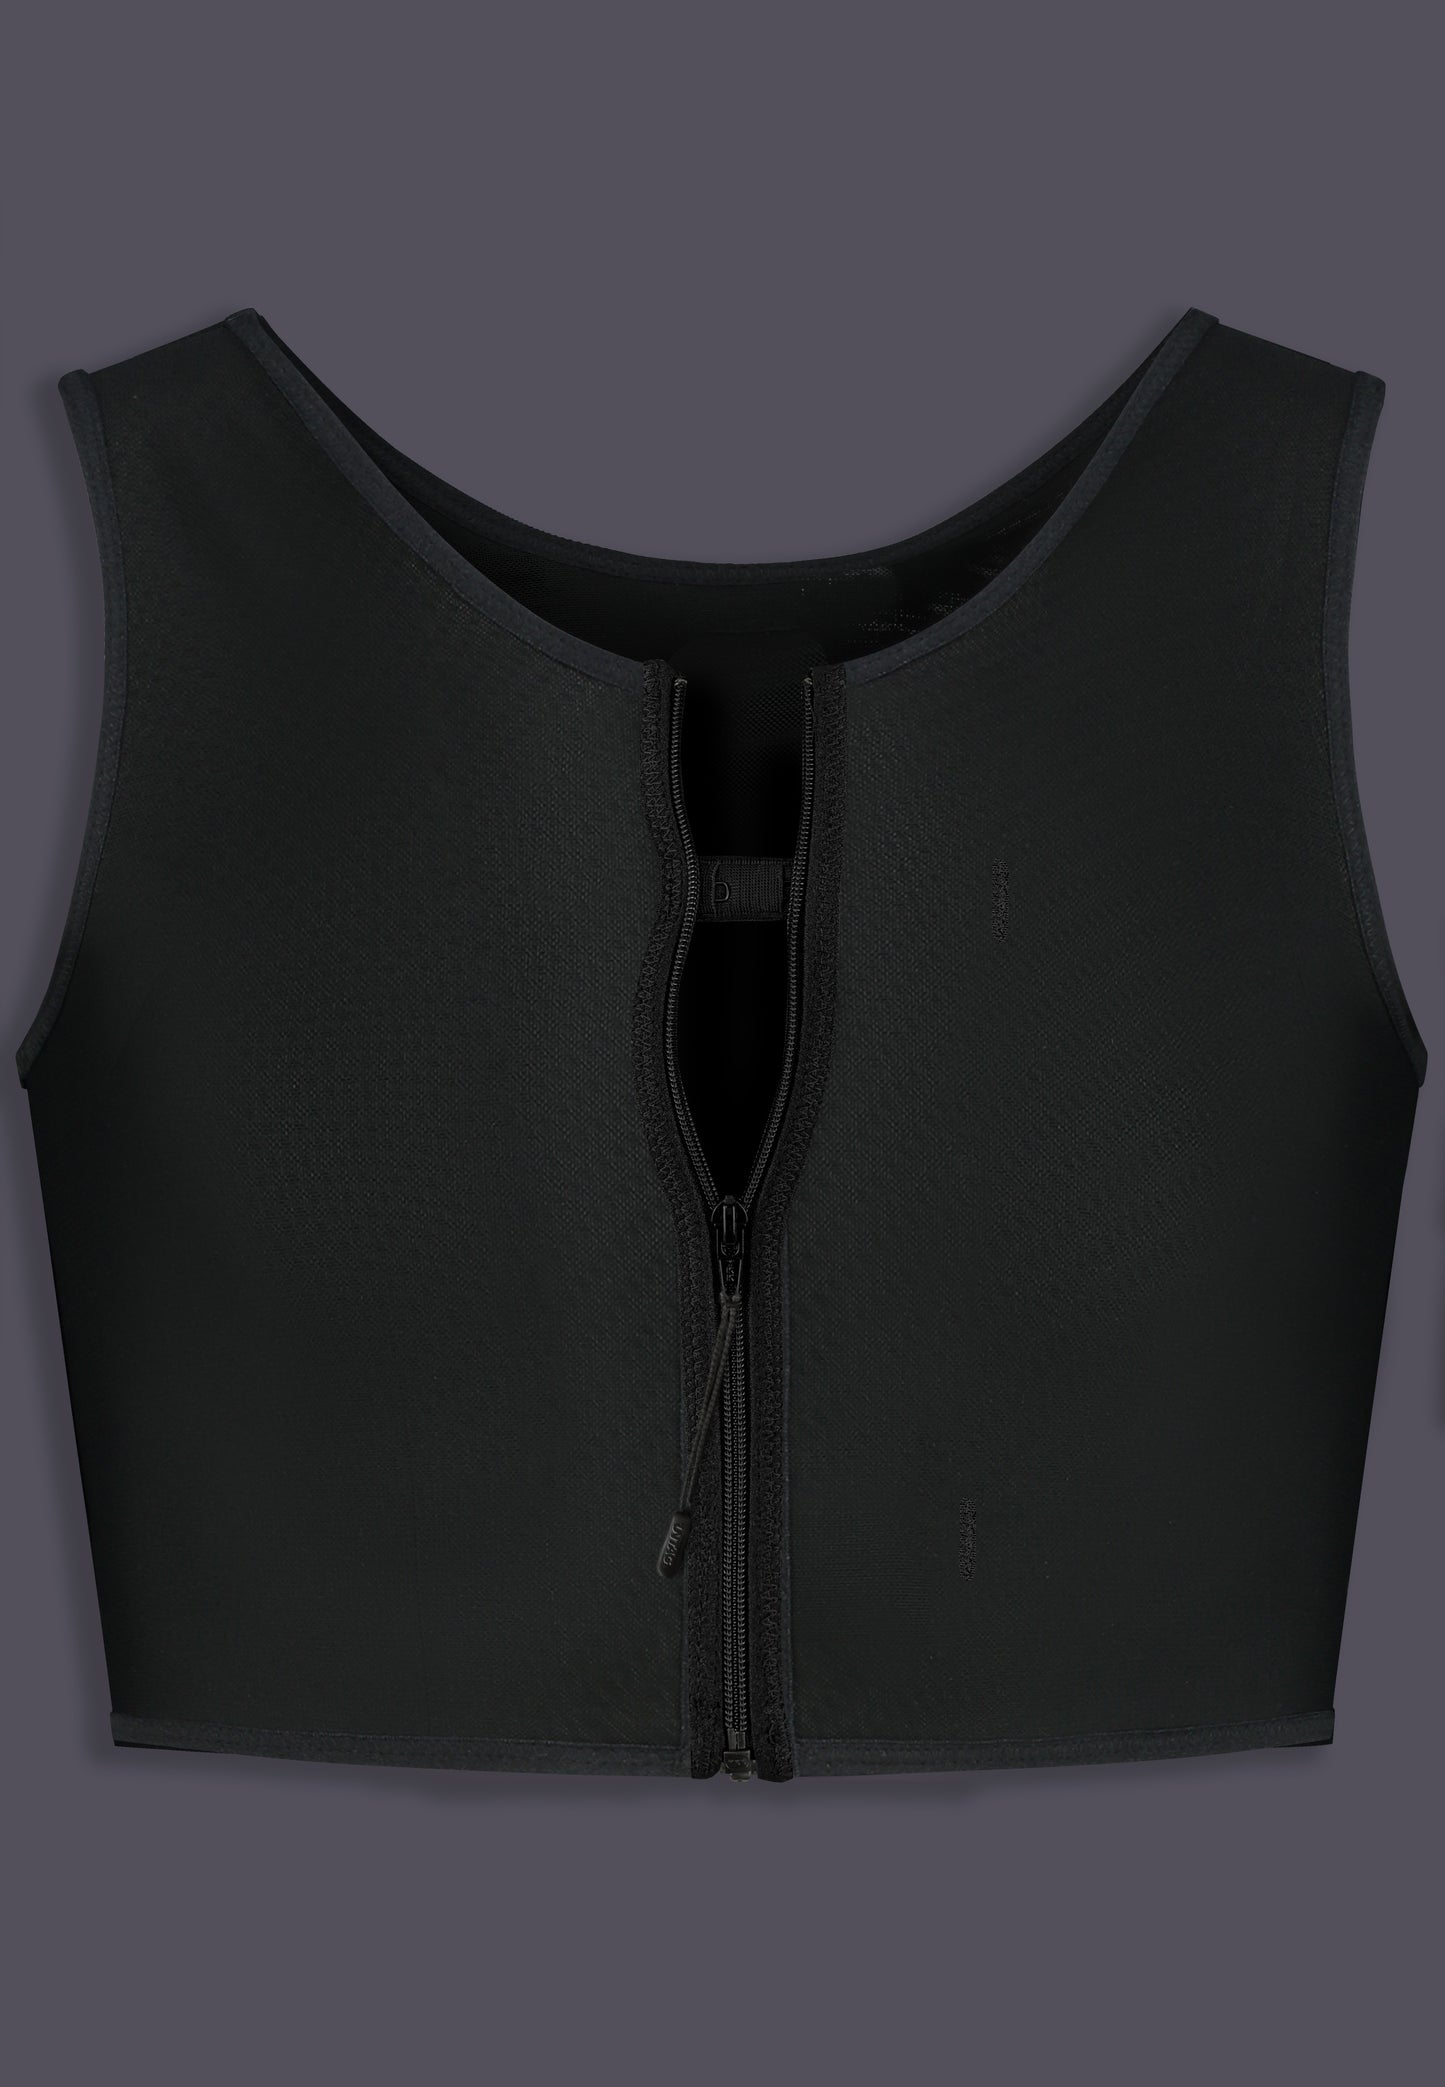 Basic Binder zipper black with hook and eye closure and zipper